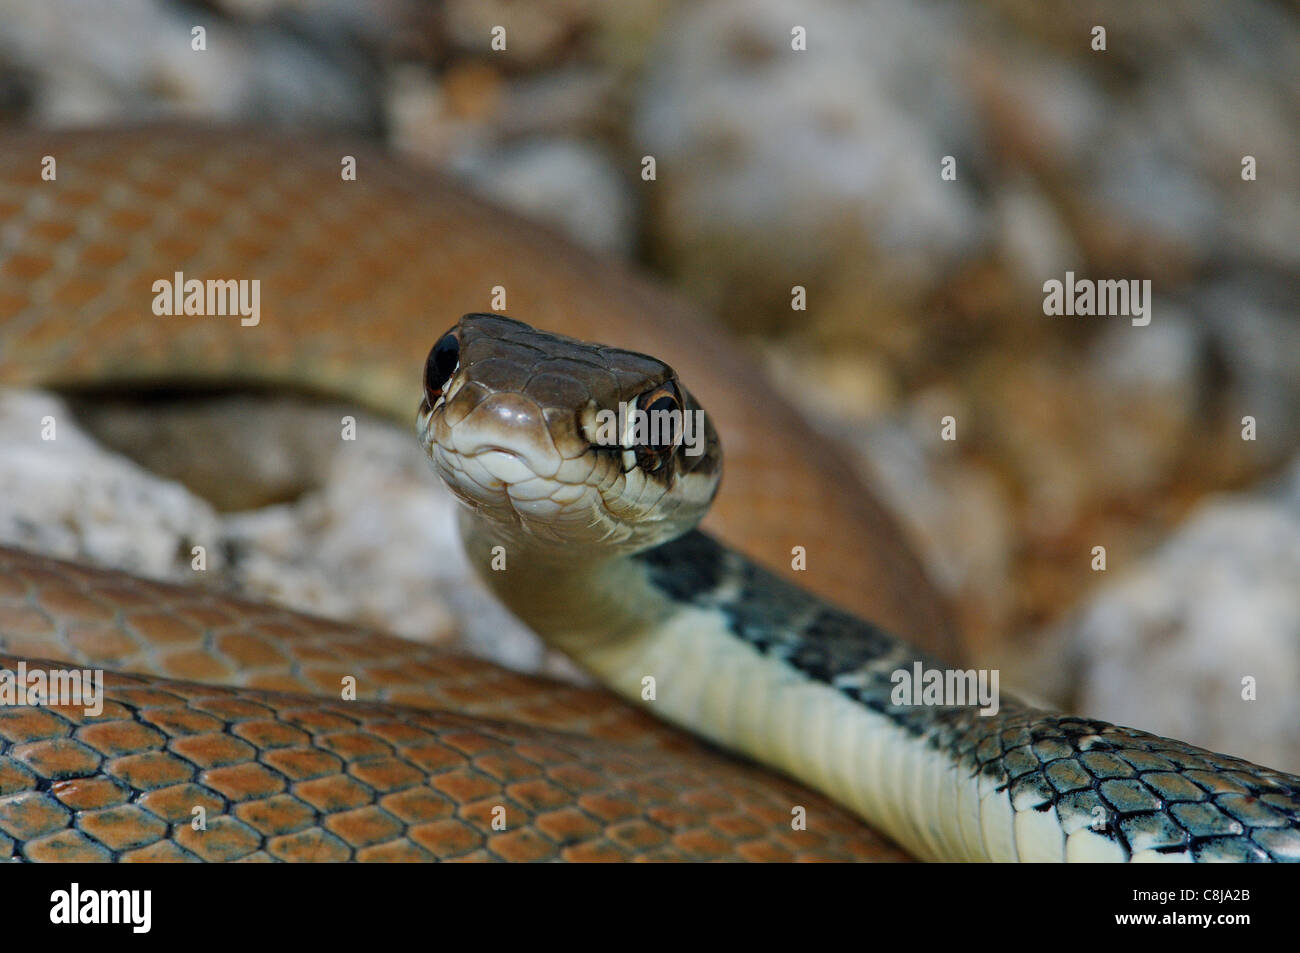 Whip snake, Dahl's whip snake, Platyceps najadum dahlii, snake, snakes, reptile, reptiles, portrait, protected, endangered, Gree Stock Photo